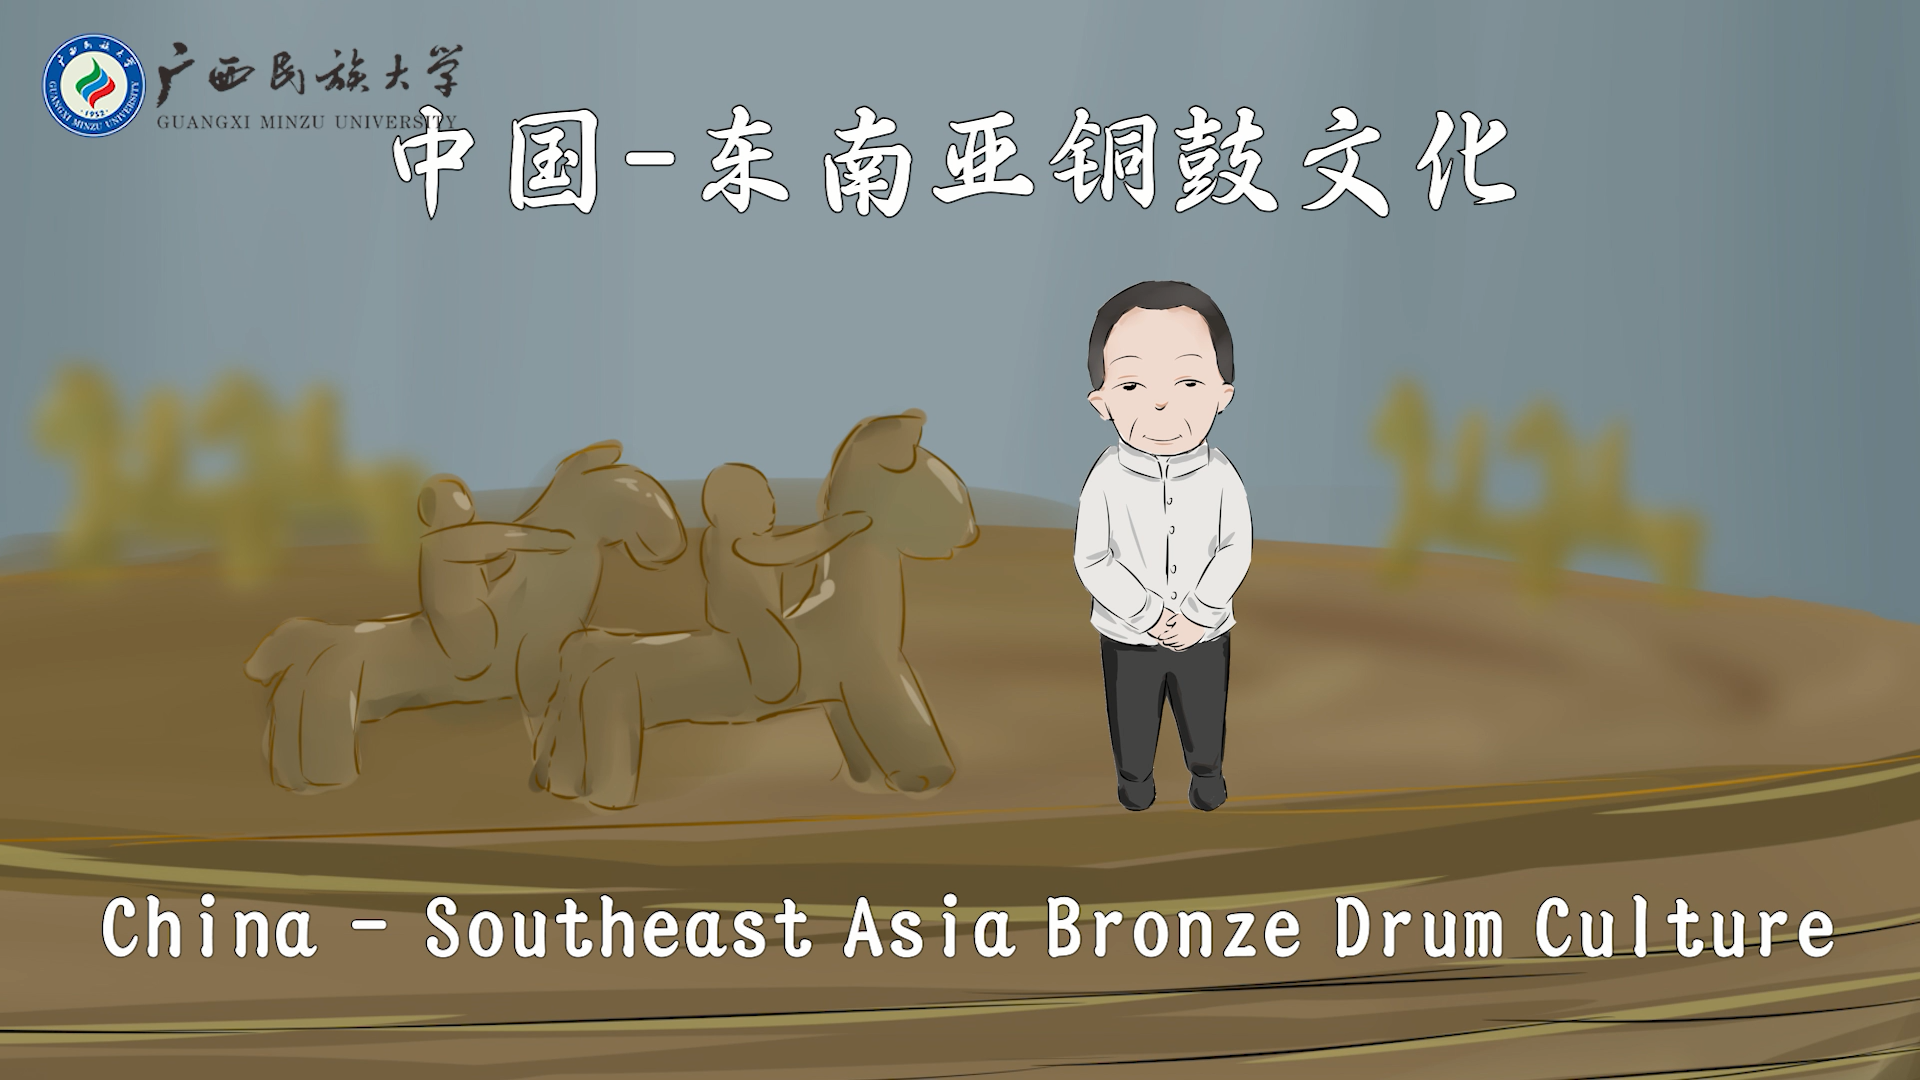 China - Southeast Asia Bronze Drum Culture